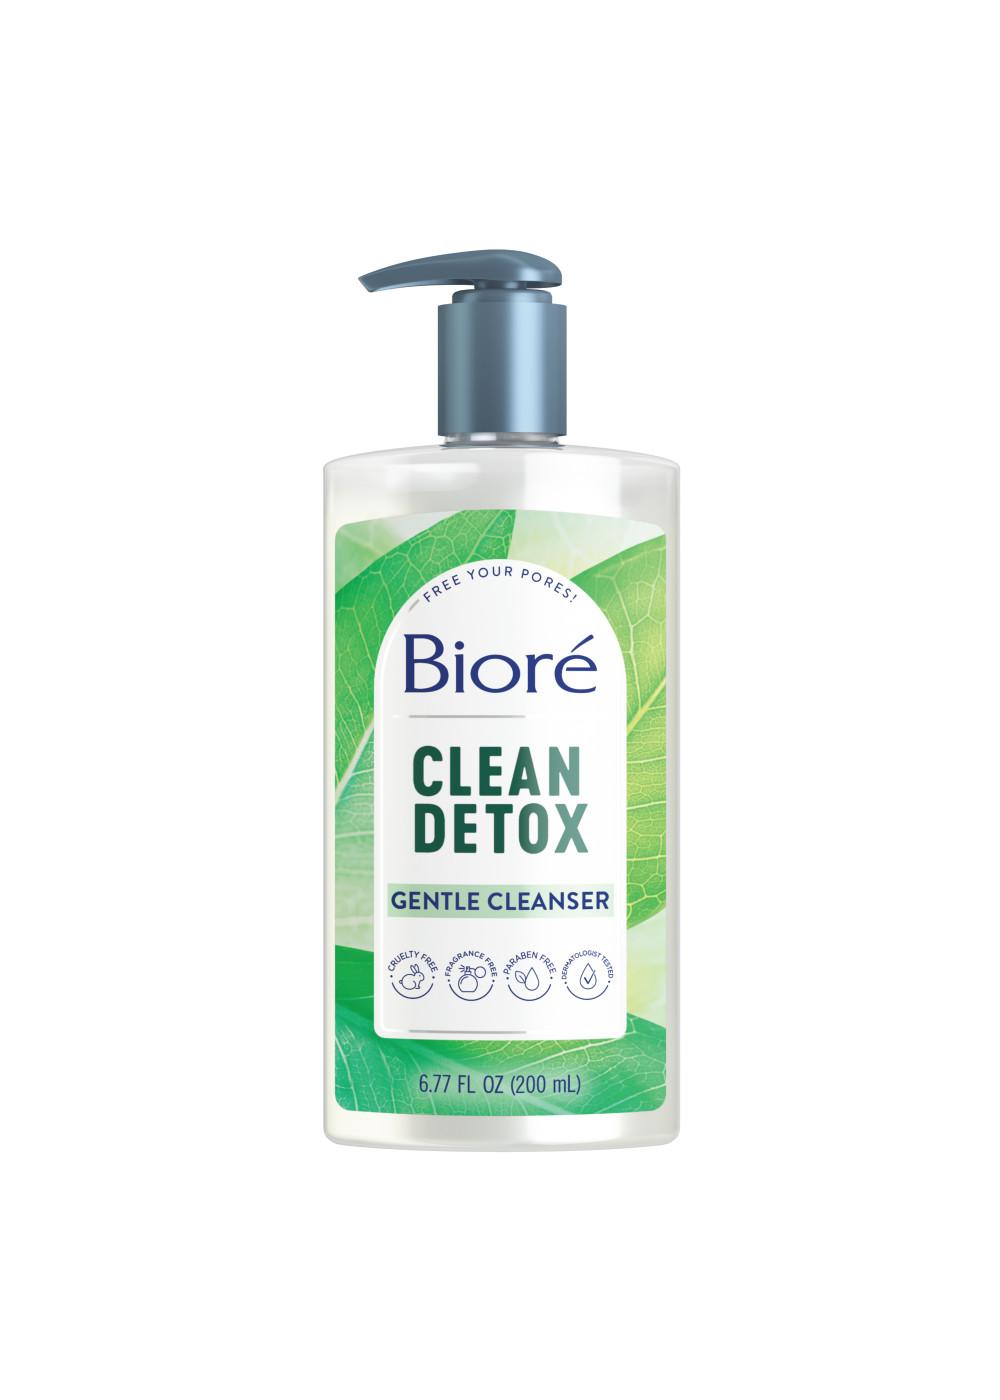 Bioré Clean Detox Gentle Cleanser; image 1 of 8